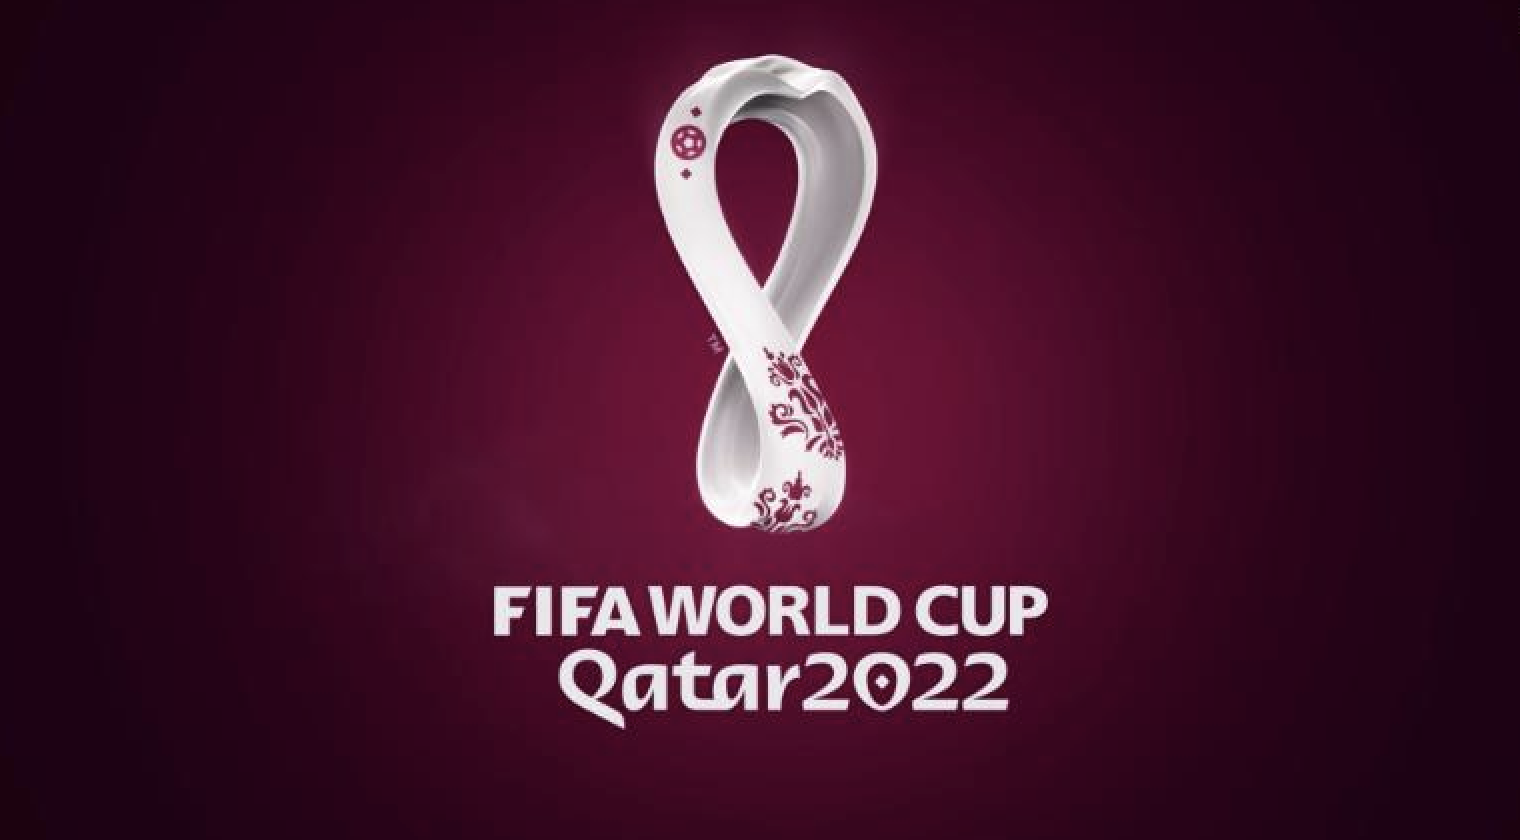 Conozca los 10 países que más entradas pidieron para el Mundial de Qatar 2022